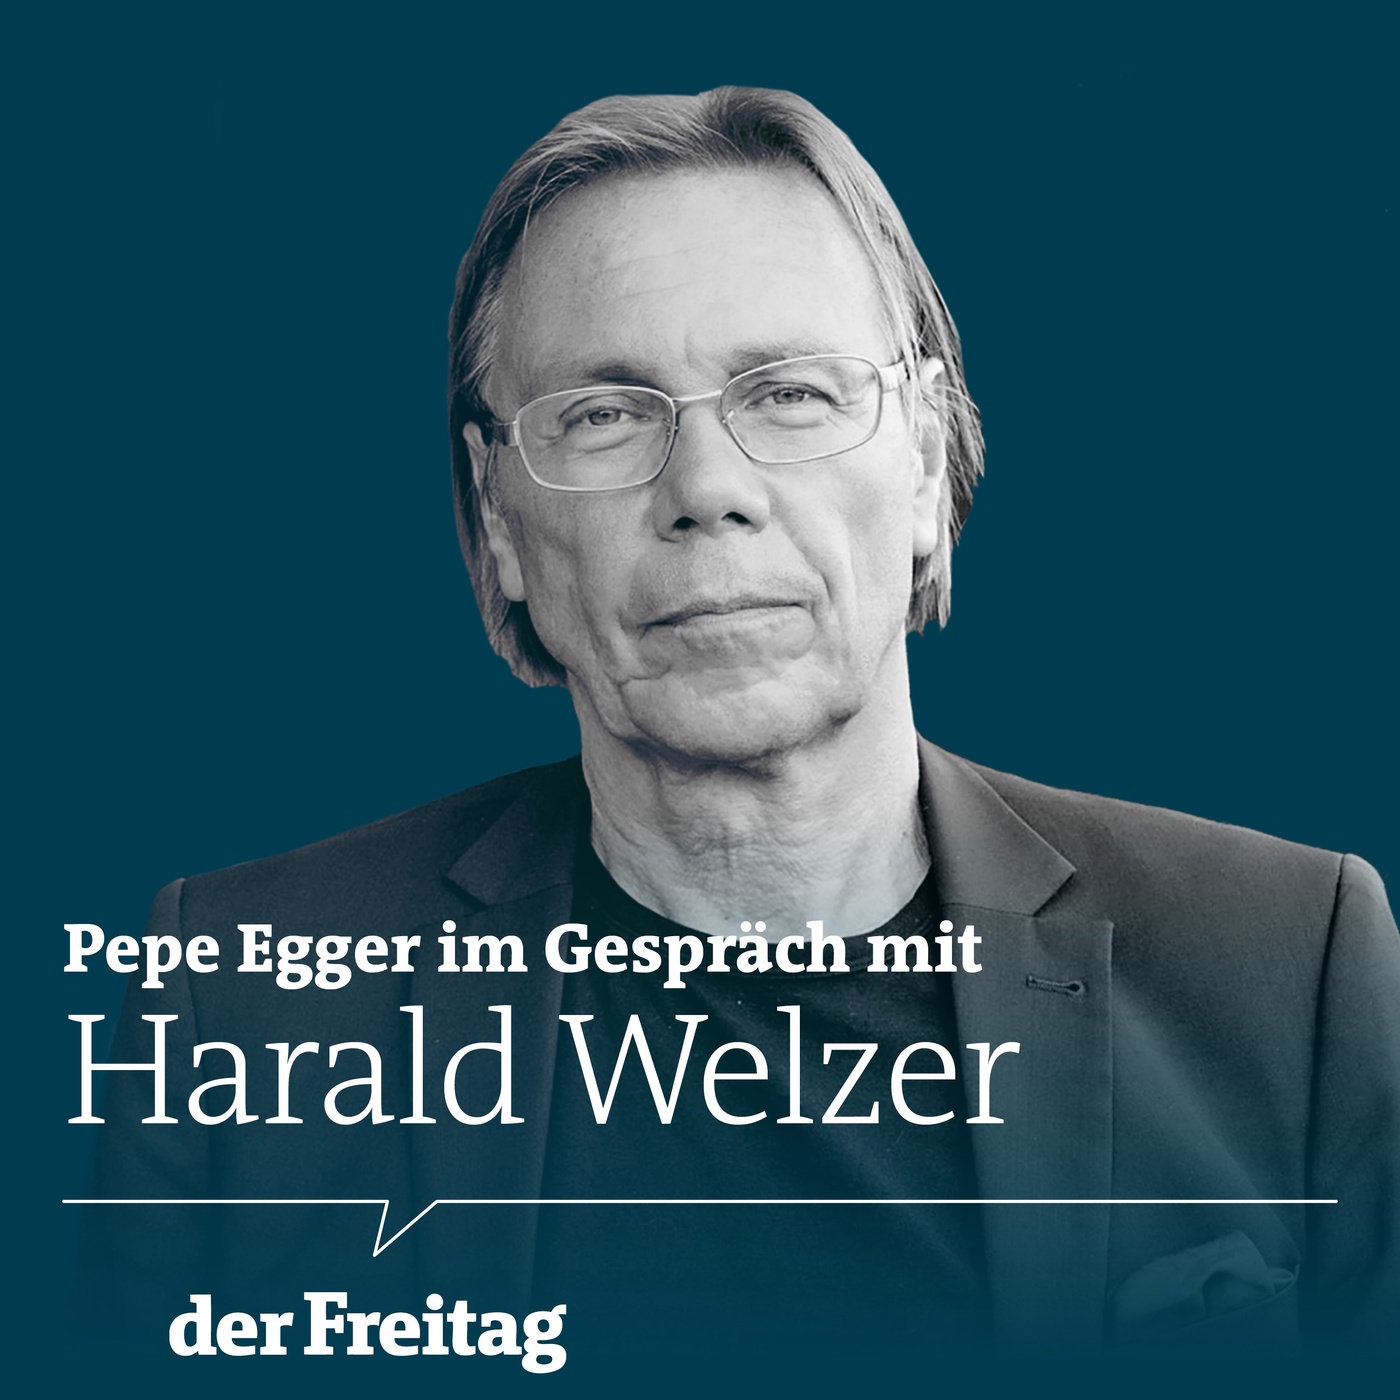 Harald Welzer über das Aufhören im Kapitalismus